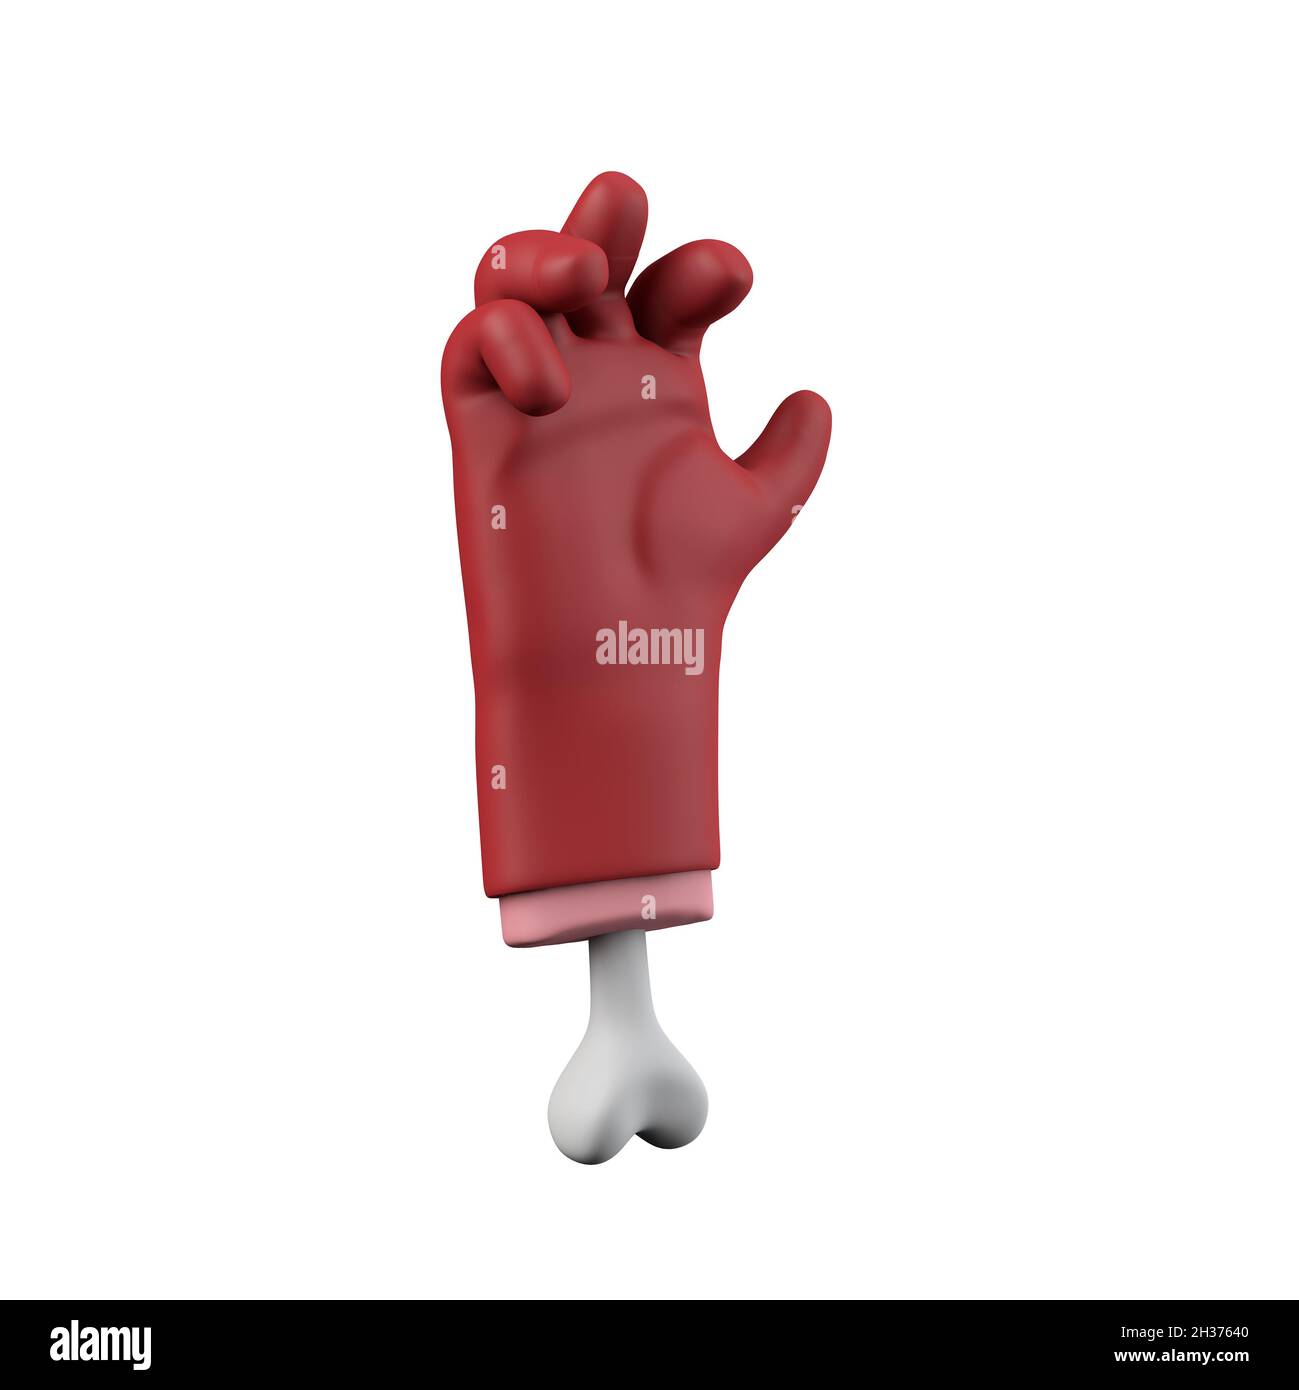 Bande dessinée rouge diable halloween Grabing hachée de la main avec des os.Rendu 3D Banque D'Images